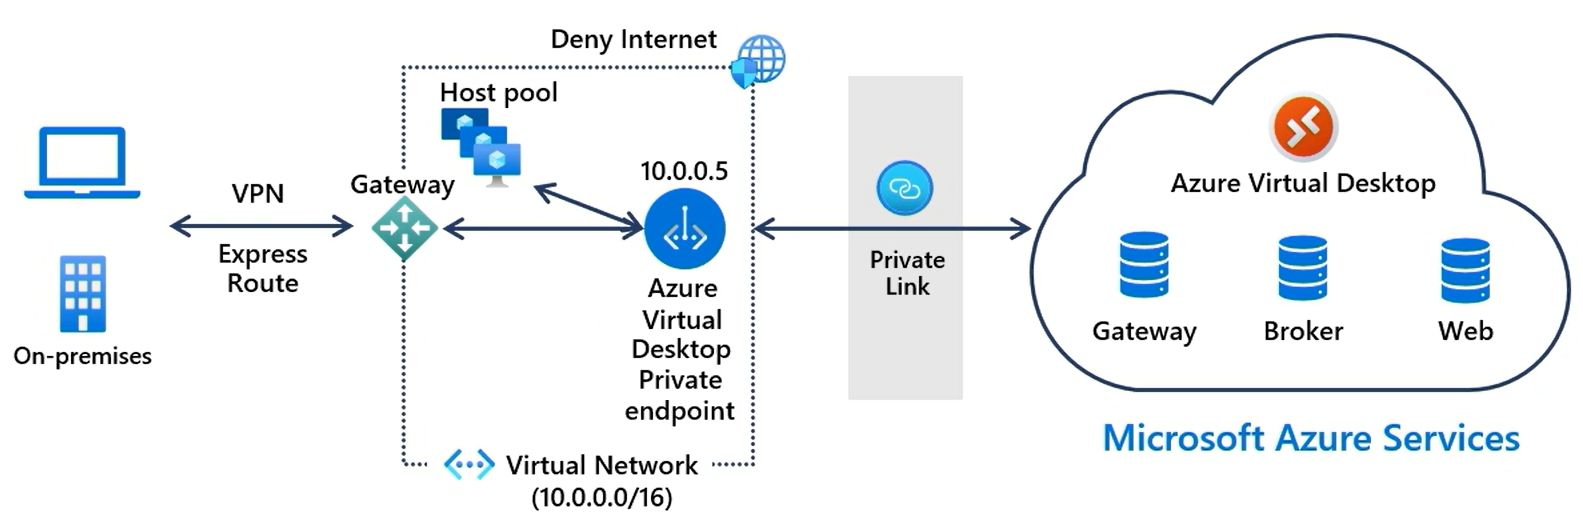 Ett diagram på hög nivå som visar hur Private Link ansluter en lokal klient till Azure Virtual Desktop-tjänsten.